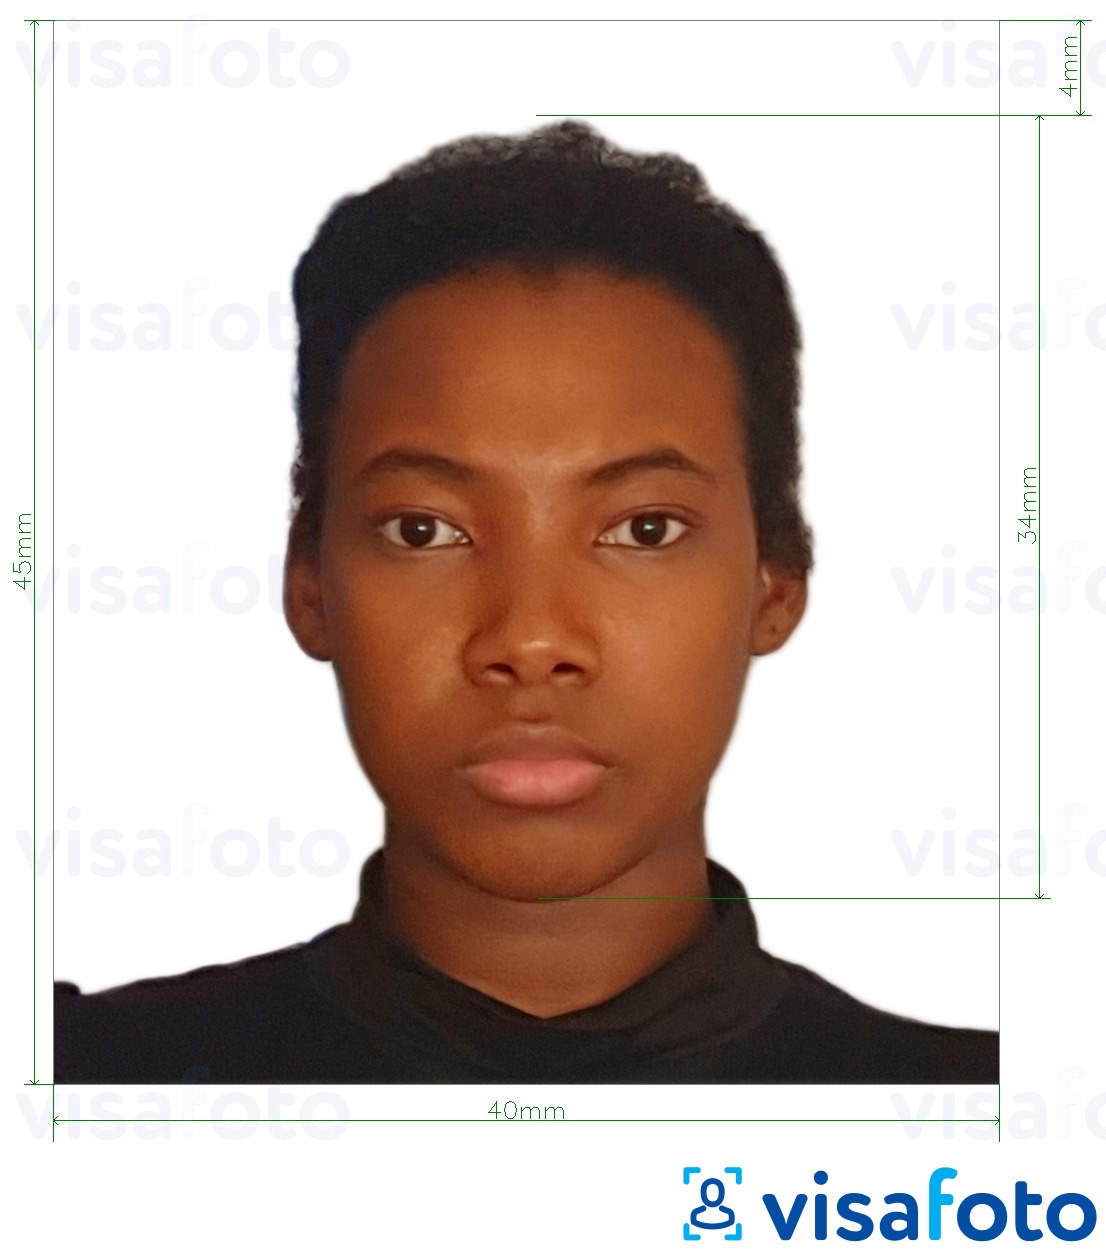 Exemplu de fotografie pentru Visa Tanzaniei 40x45 mm (4x4,5 cm) cu aceeași dimensiune indicată